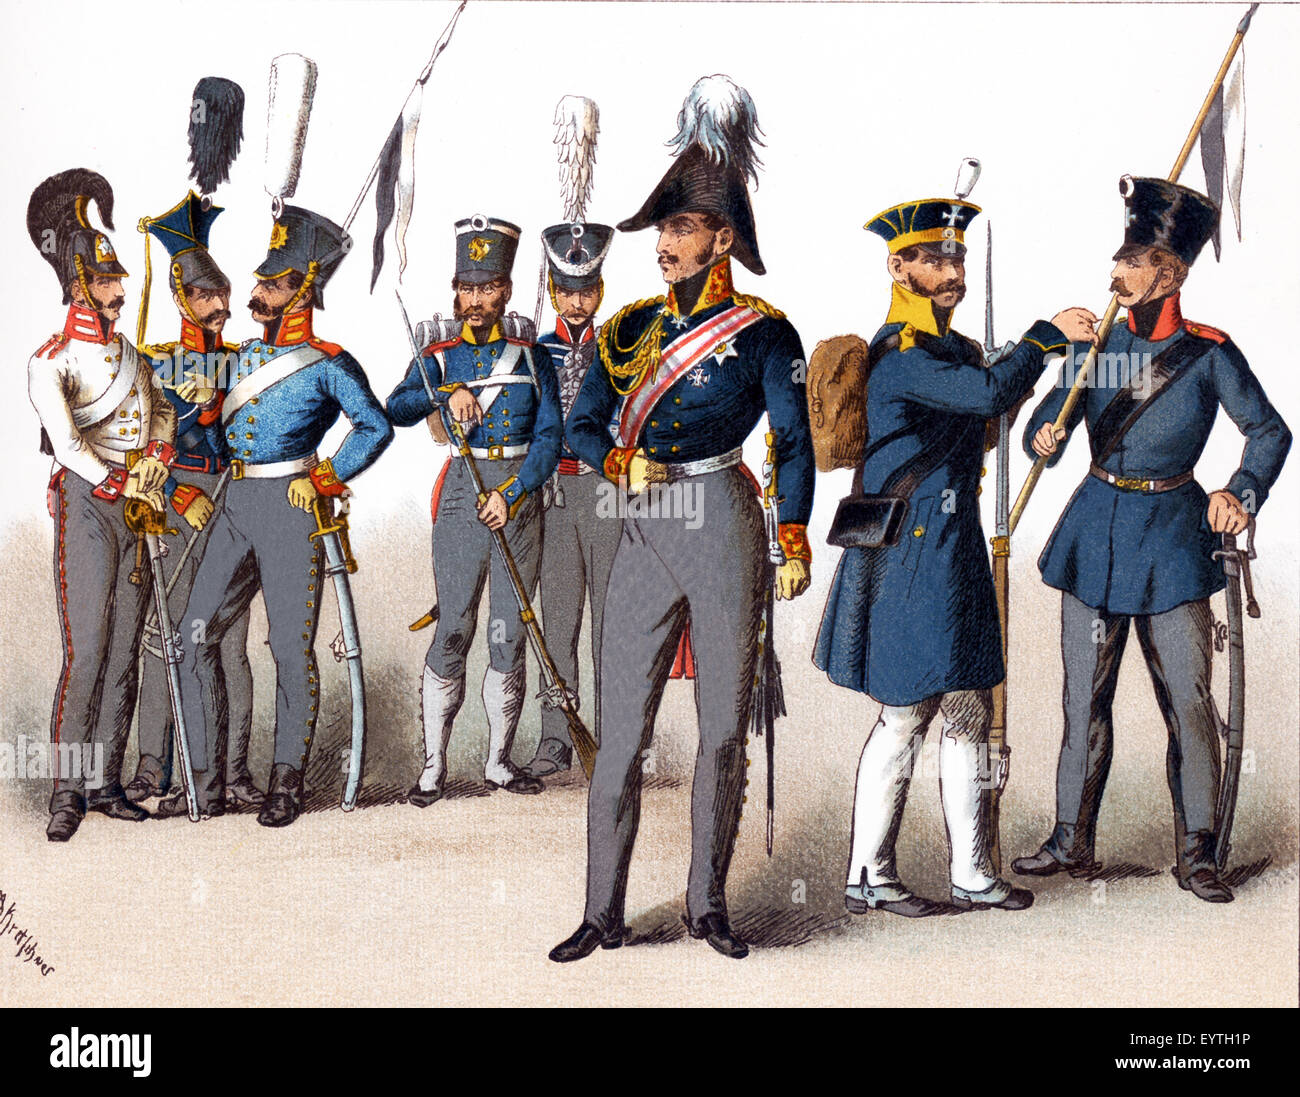 Les chiffres ci-dessus représentent des militaires prussiens. De gauche à droite : Cuirassier 1814, Uhlan, Dragoon, de l'infanterie de ligne, Hussar, général, la Silésie, La Milice La Milice et la cavalerie. L'illustration dates à 1882. Banque D'Images